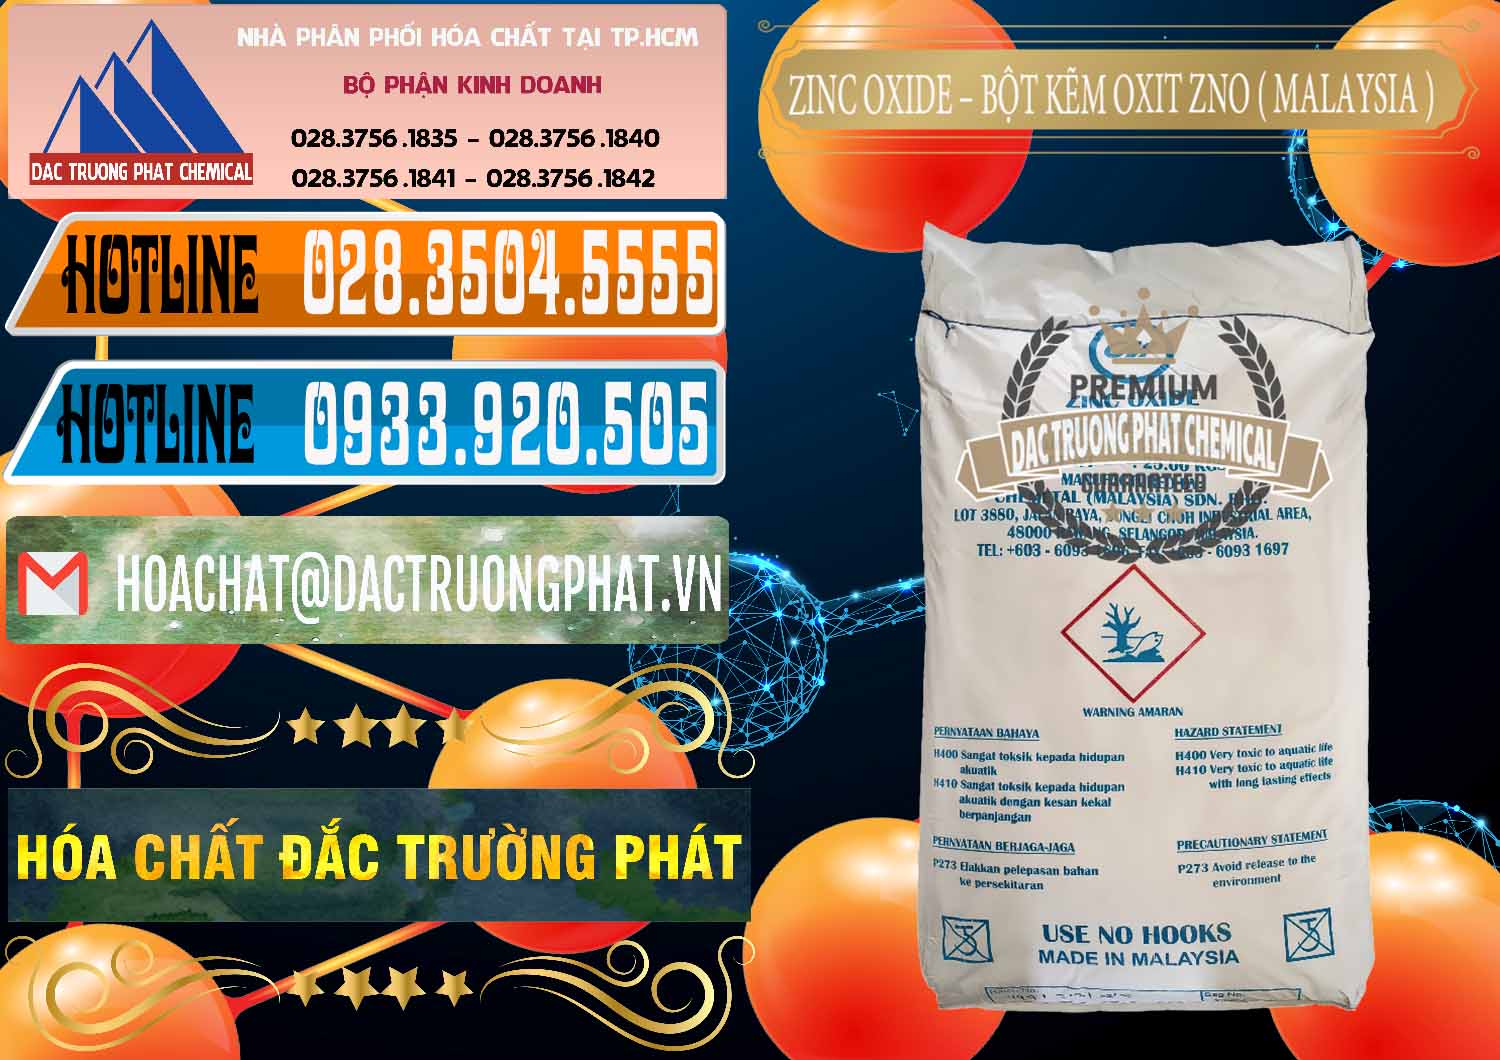 Nơi cung cấp và bán Zinc Oxide - Bột Kẽm Oxit ZNO Malaysia - 0179 - Cty chuyên kinh doanh - phân phối hóa chất tại TP.HCM - stmp.net